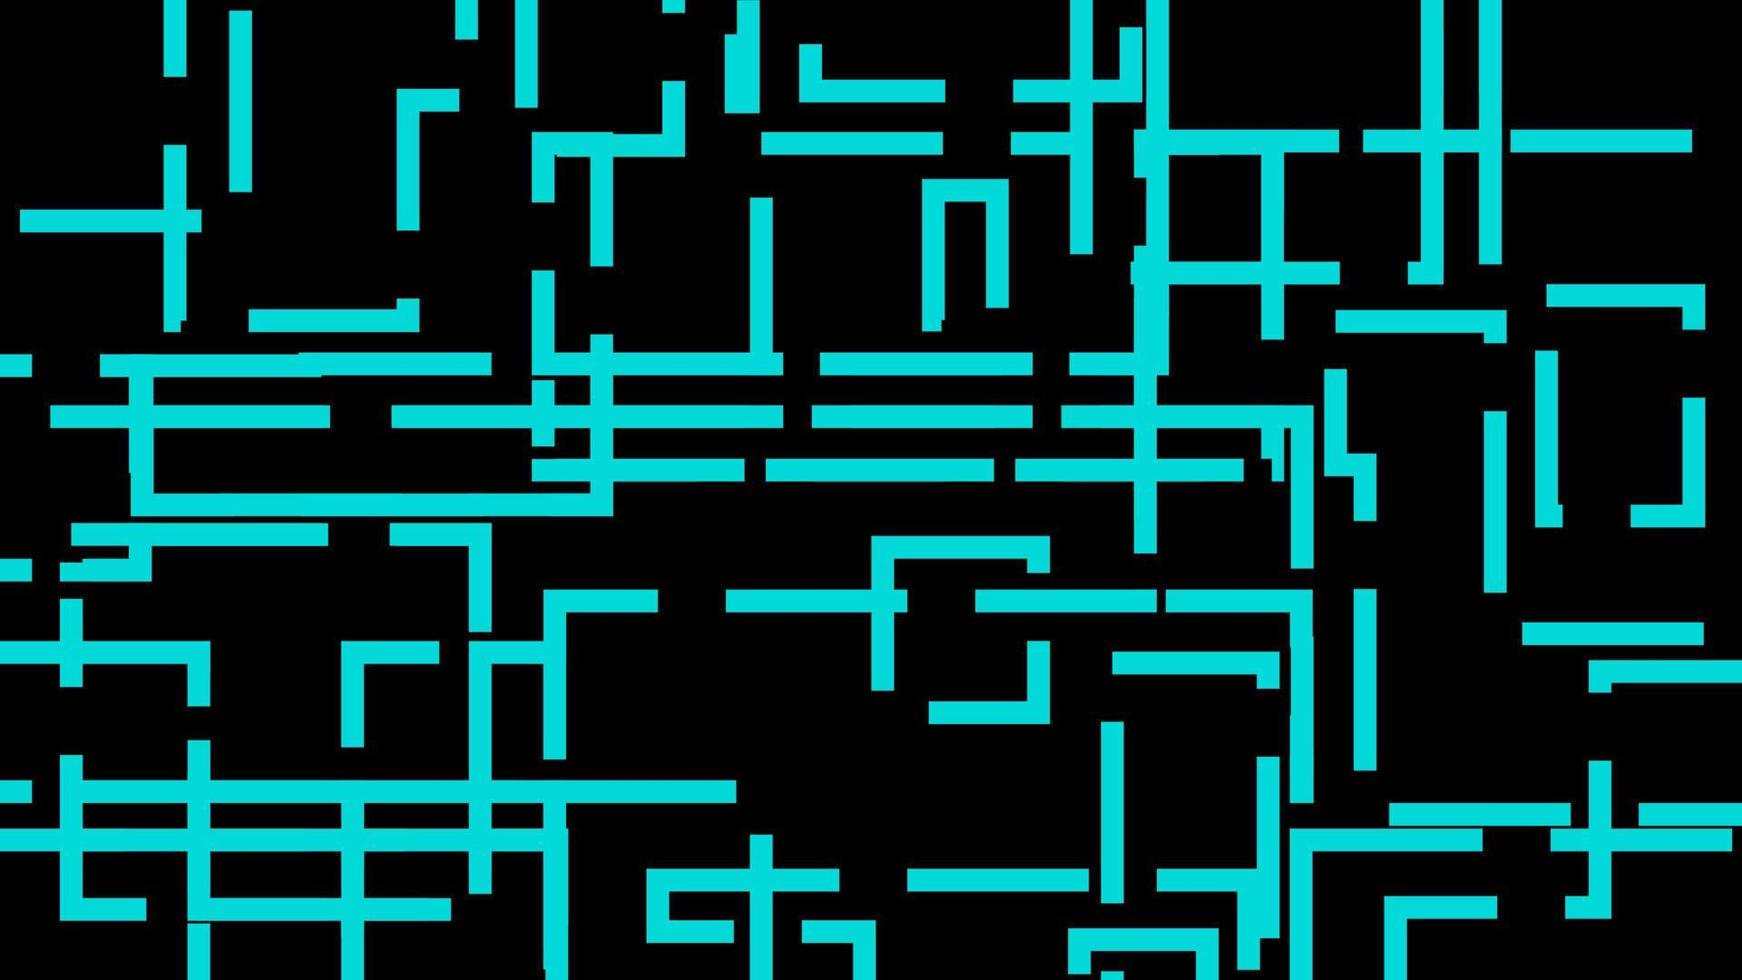 patrón de líneas de neón azul abstracto en el estilo de tecnología de fondo negro. concepto futurista moderno vector